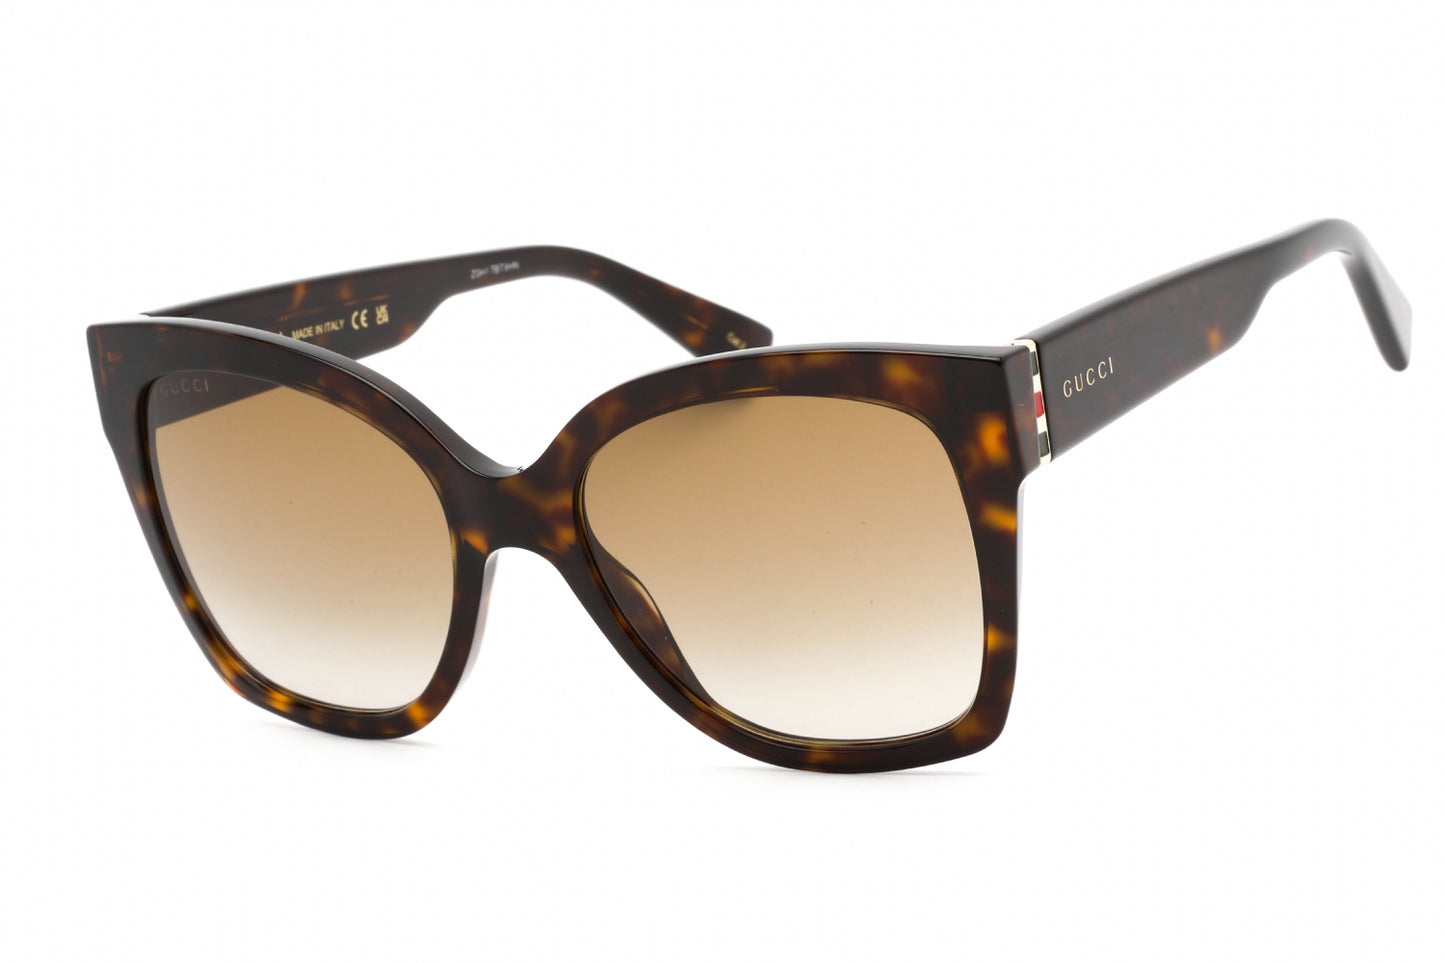 Gucci GG0459S-002 54mm New Sunglasses